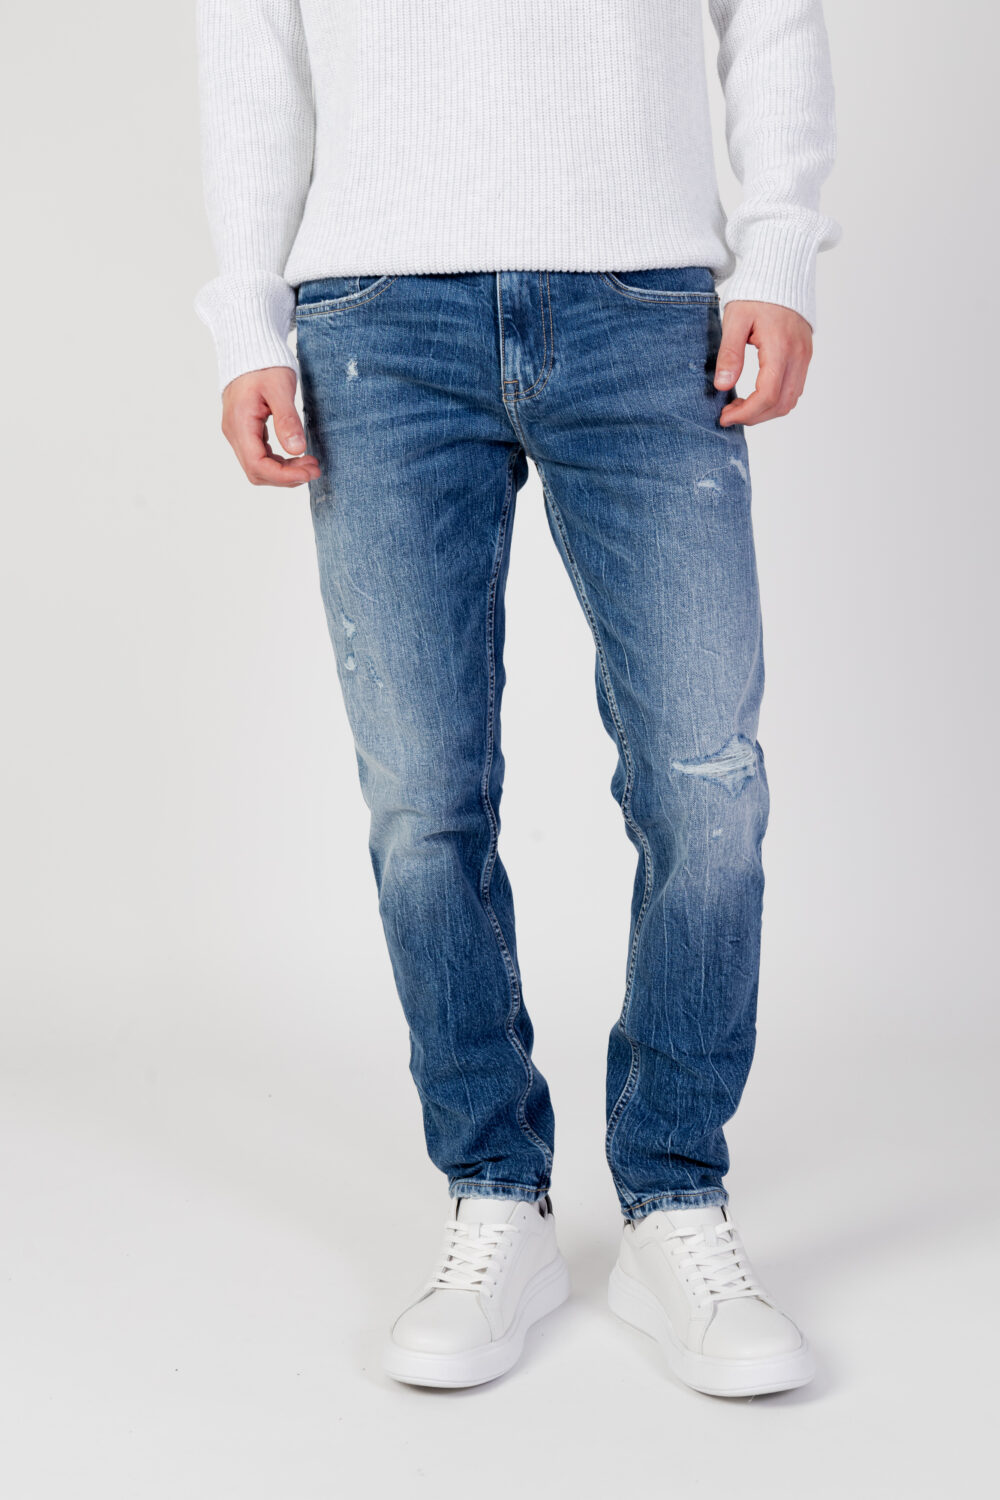 Jeans Tapered Tommy Hilfiger Jeans austin slim tprd dg2 Denim - Foto 7